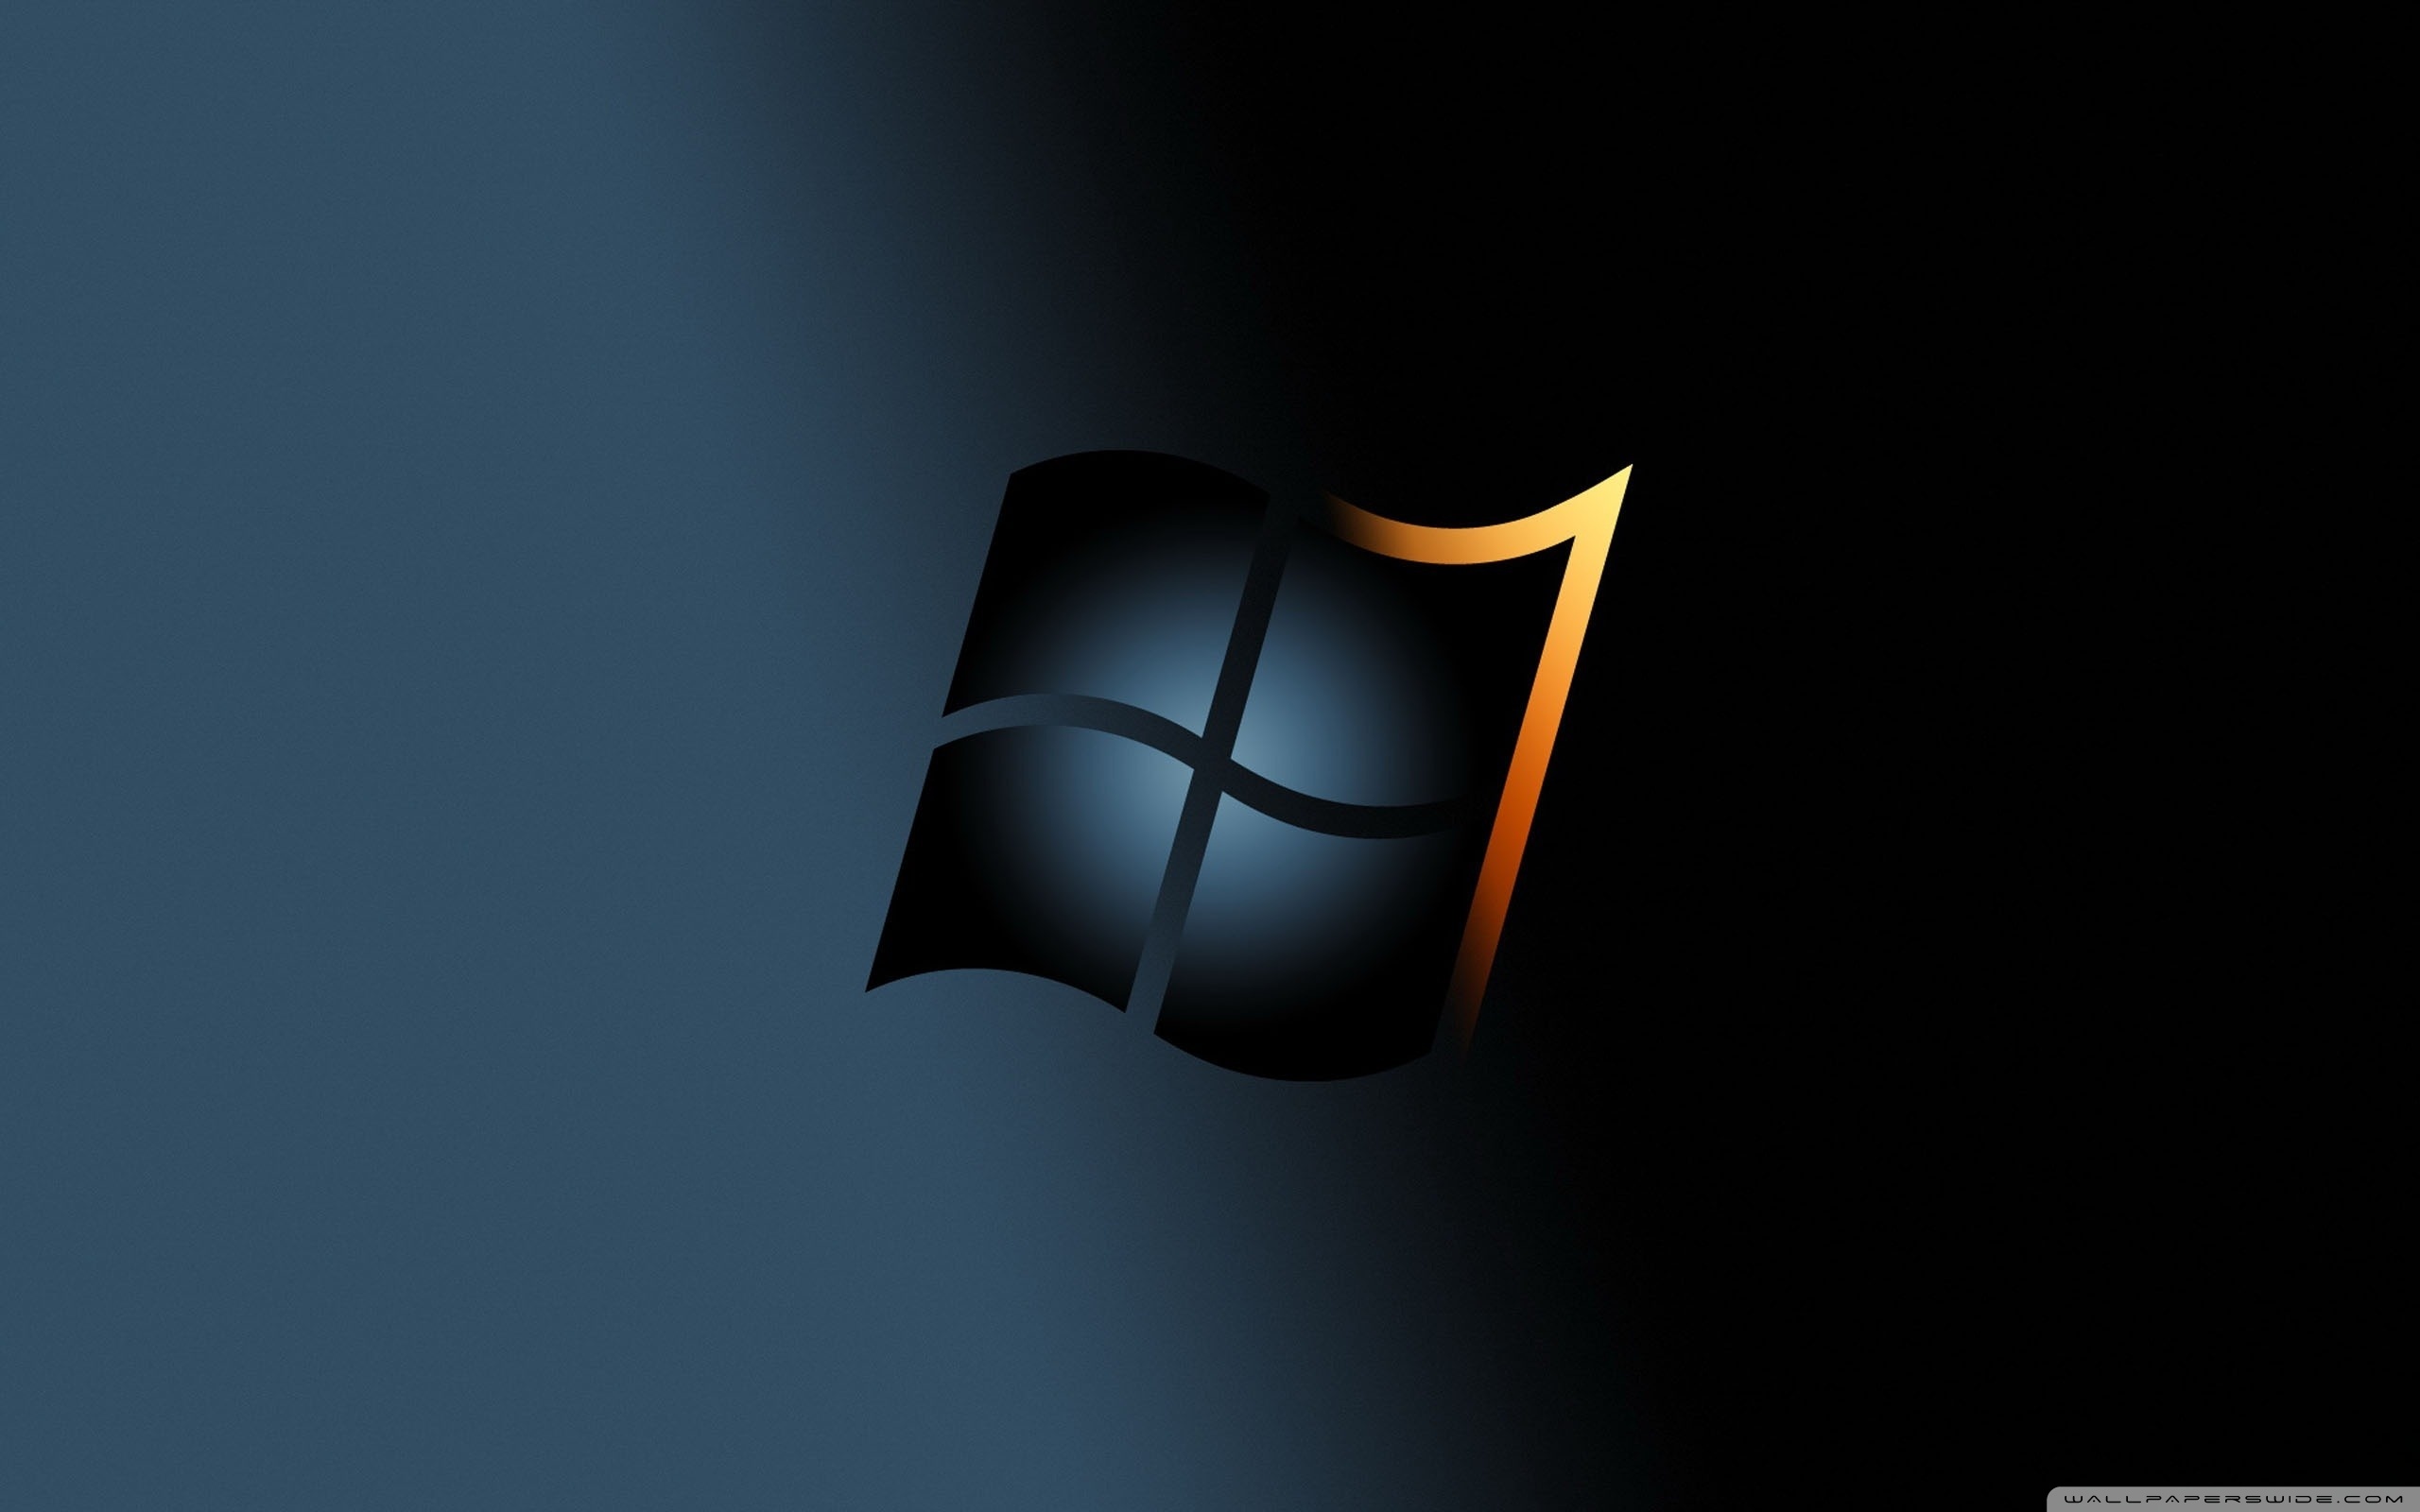 Tải hình nền cho Windows 7 độ phân giải cao sẽ mang đến cho bạn trải nghiệm độc đáo và chân thật. Hình ảnh sắc nét và tinh tế sẽ khiến màn hình máy tính của bạn trở nên sống động hơn bao giờ hết. Vui lòng ghé thăm trang web của chúng tôi và khám phá ngay hôm nay.